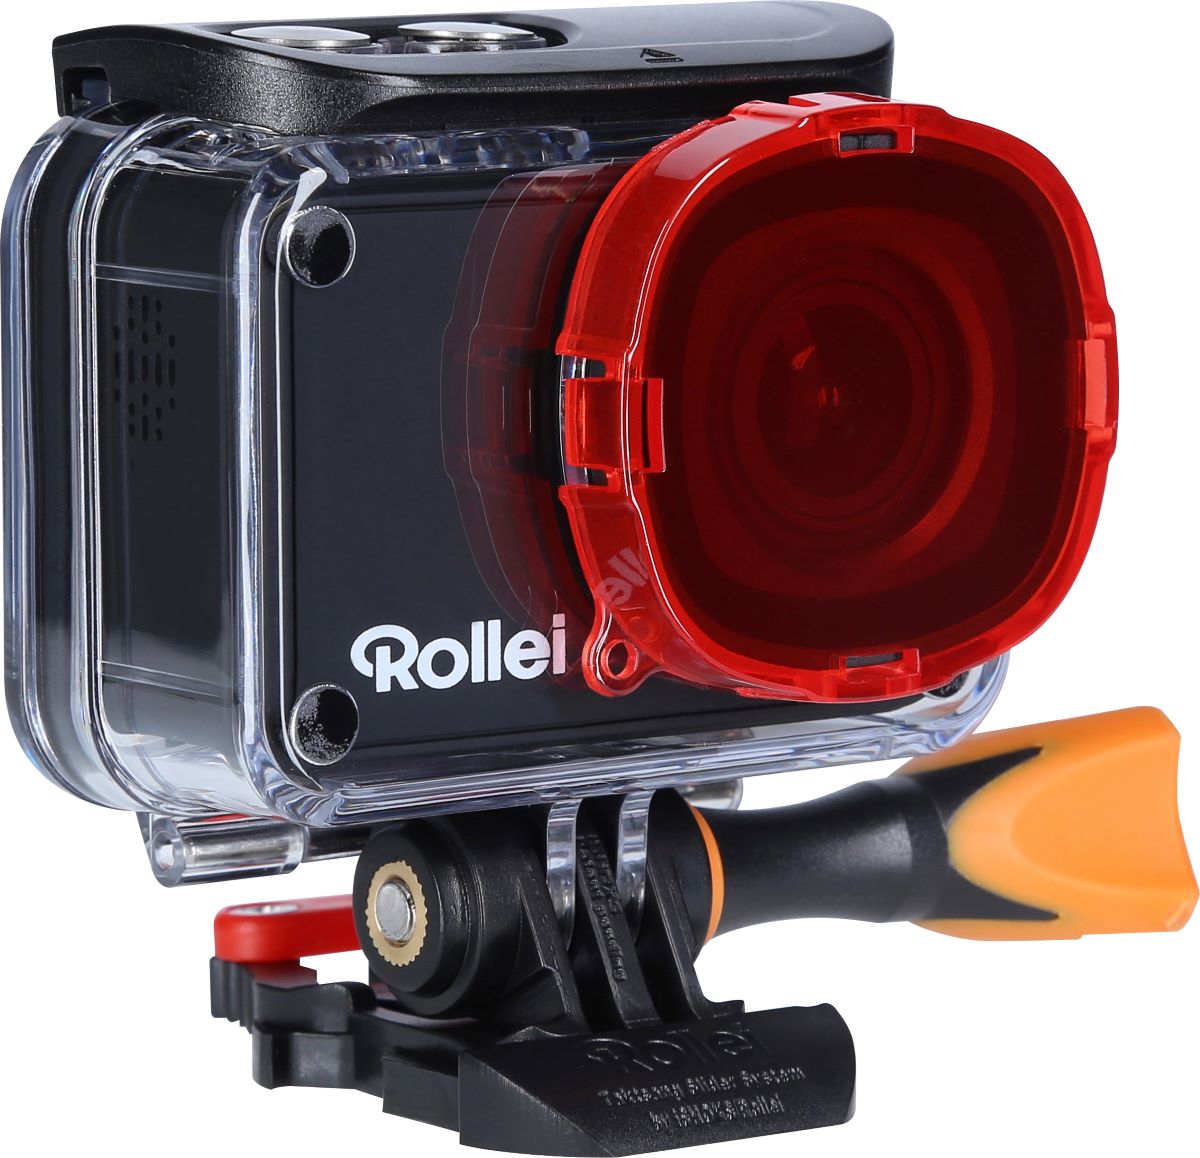 Rollei Actioncam mit Filter